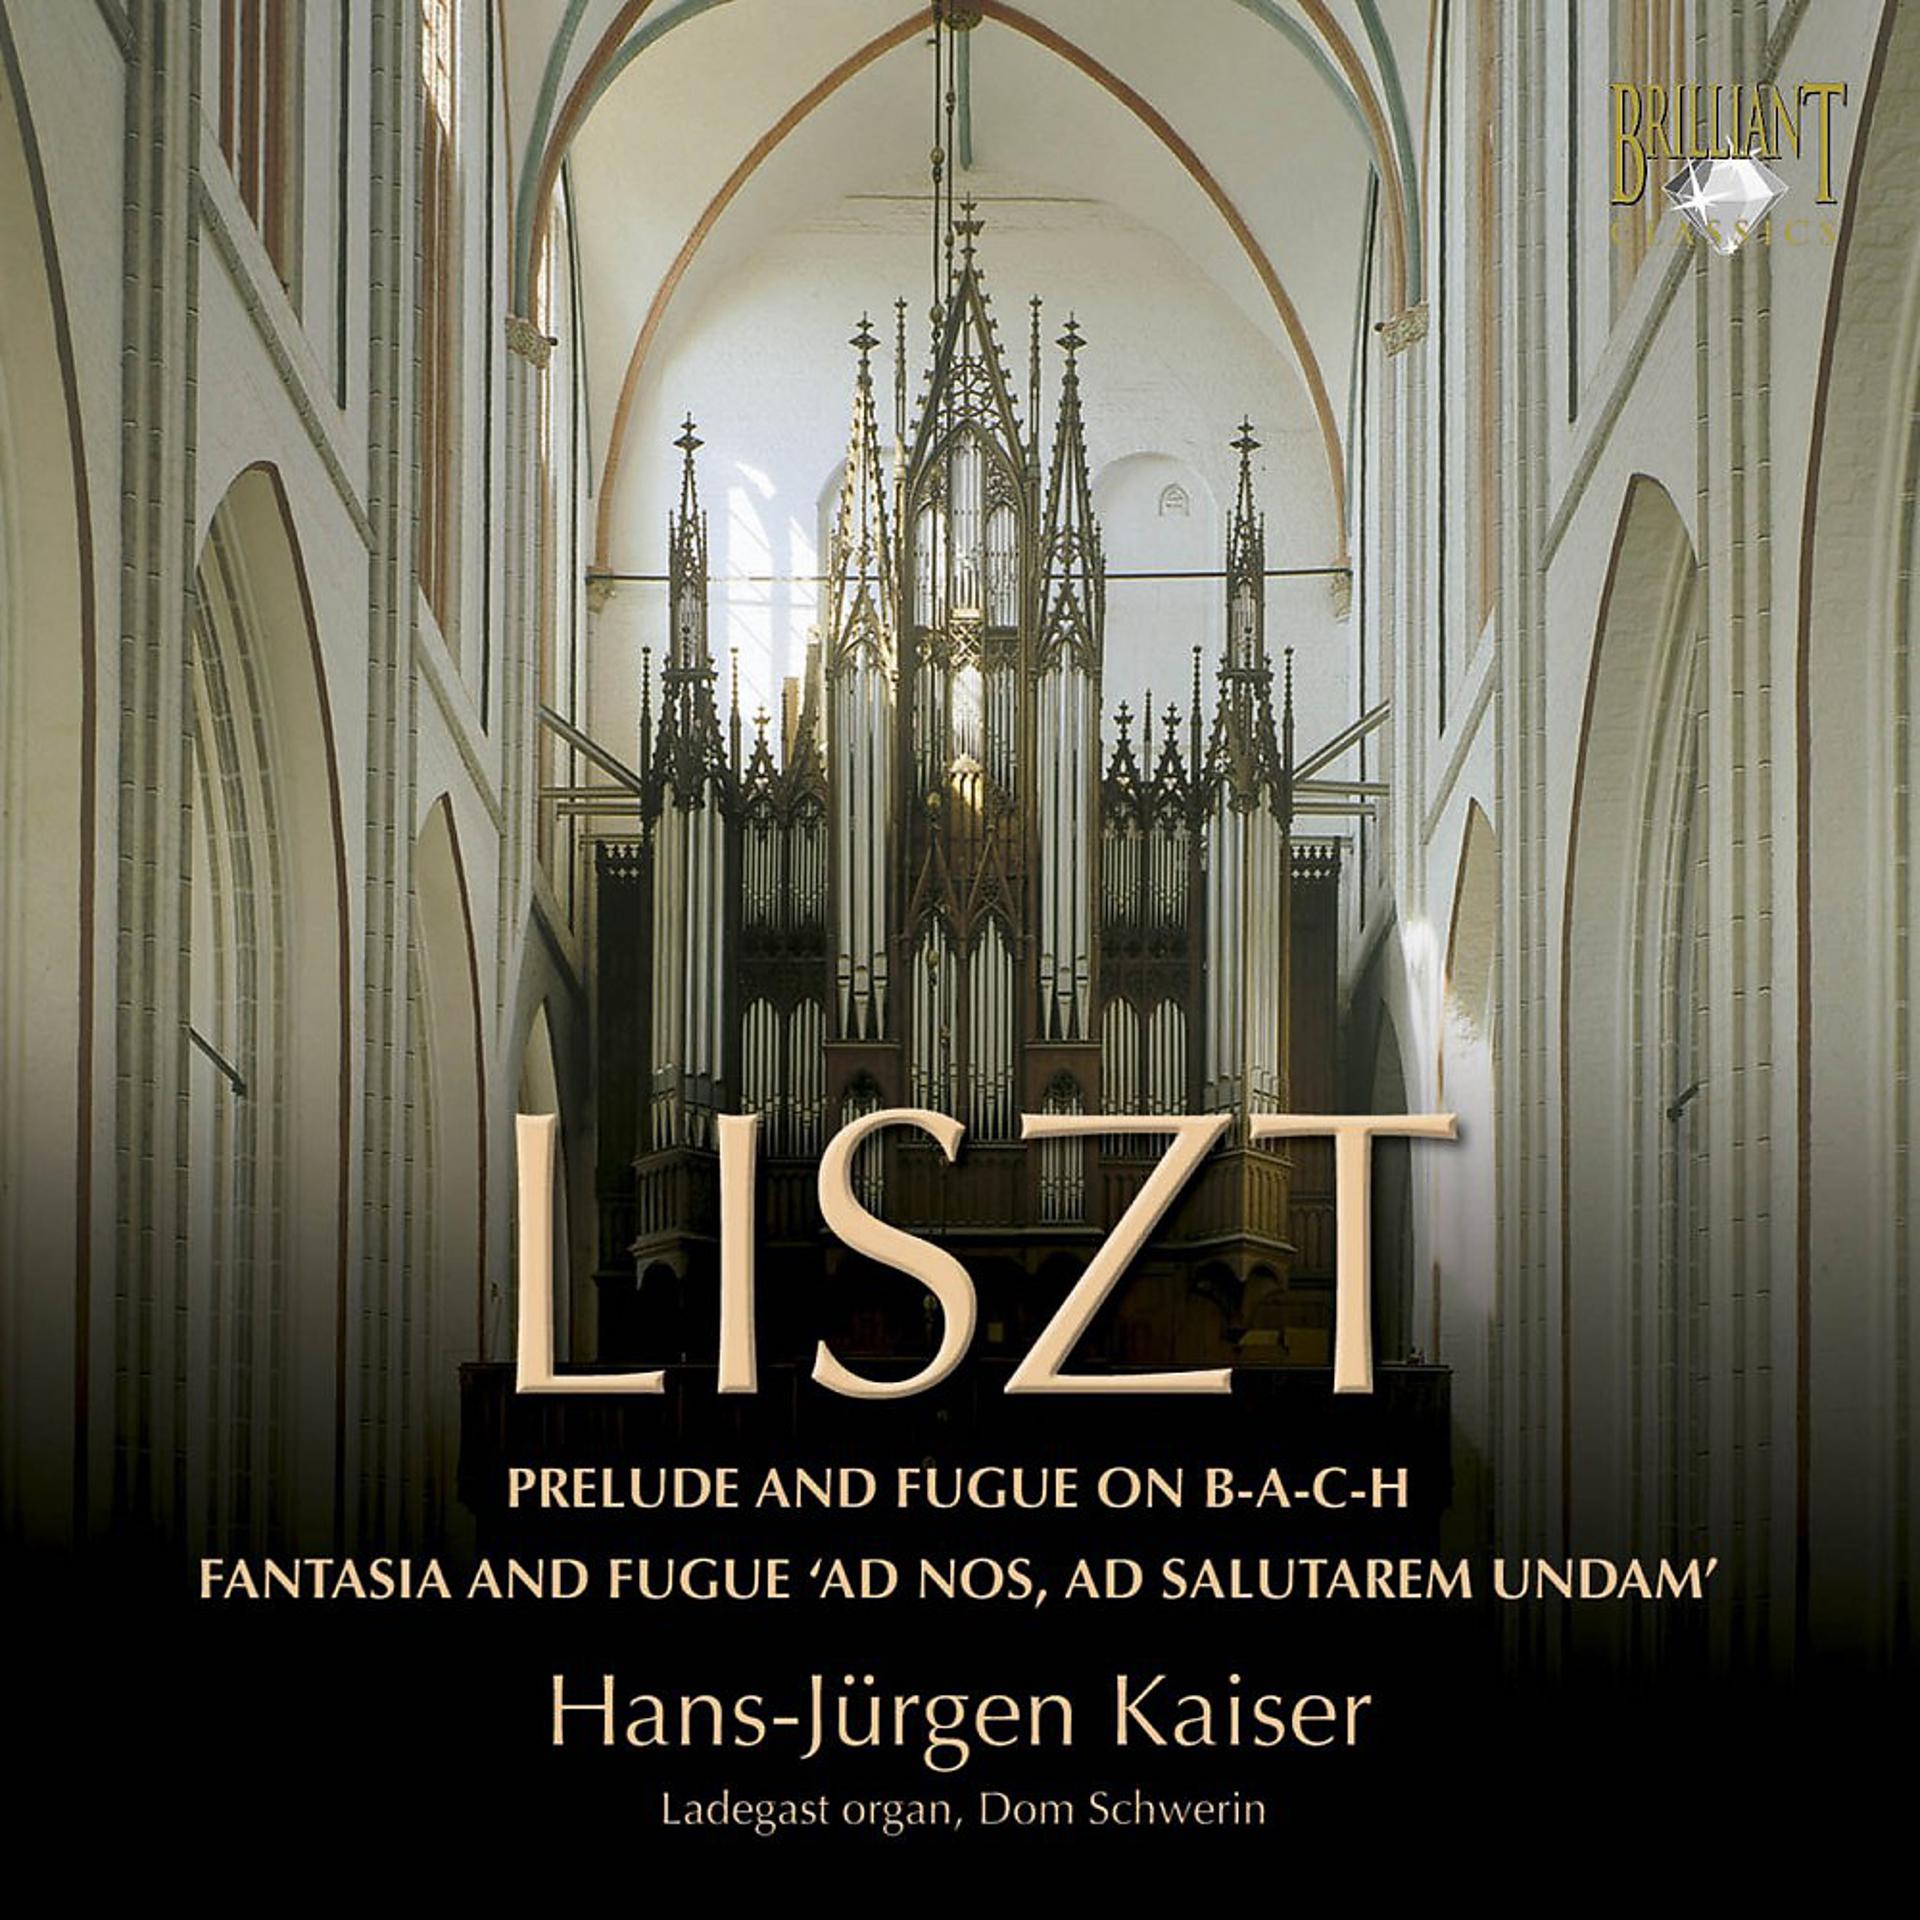 Постер альбома Liszt: Organ Works